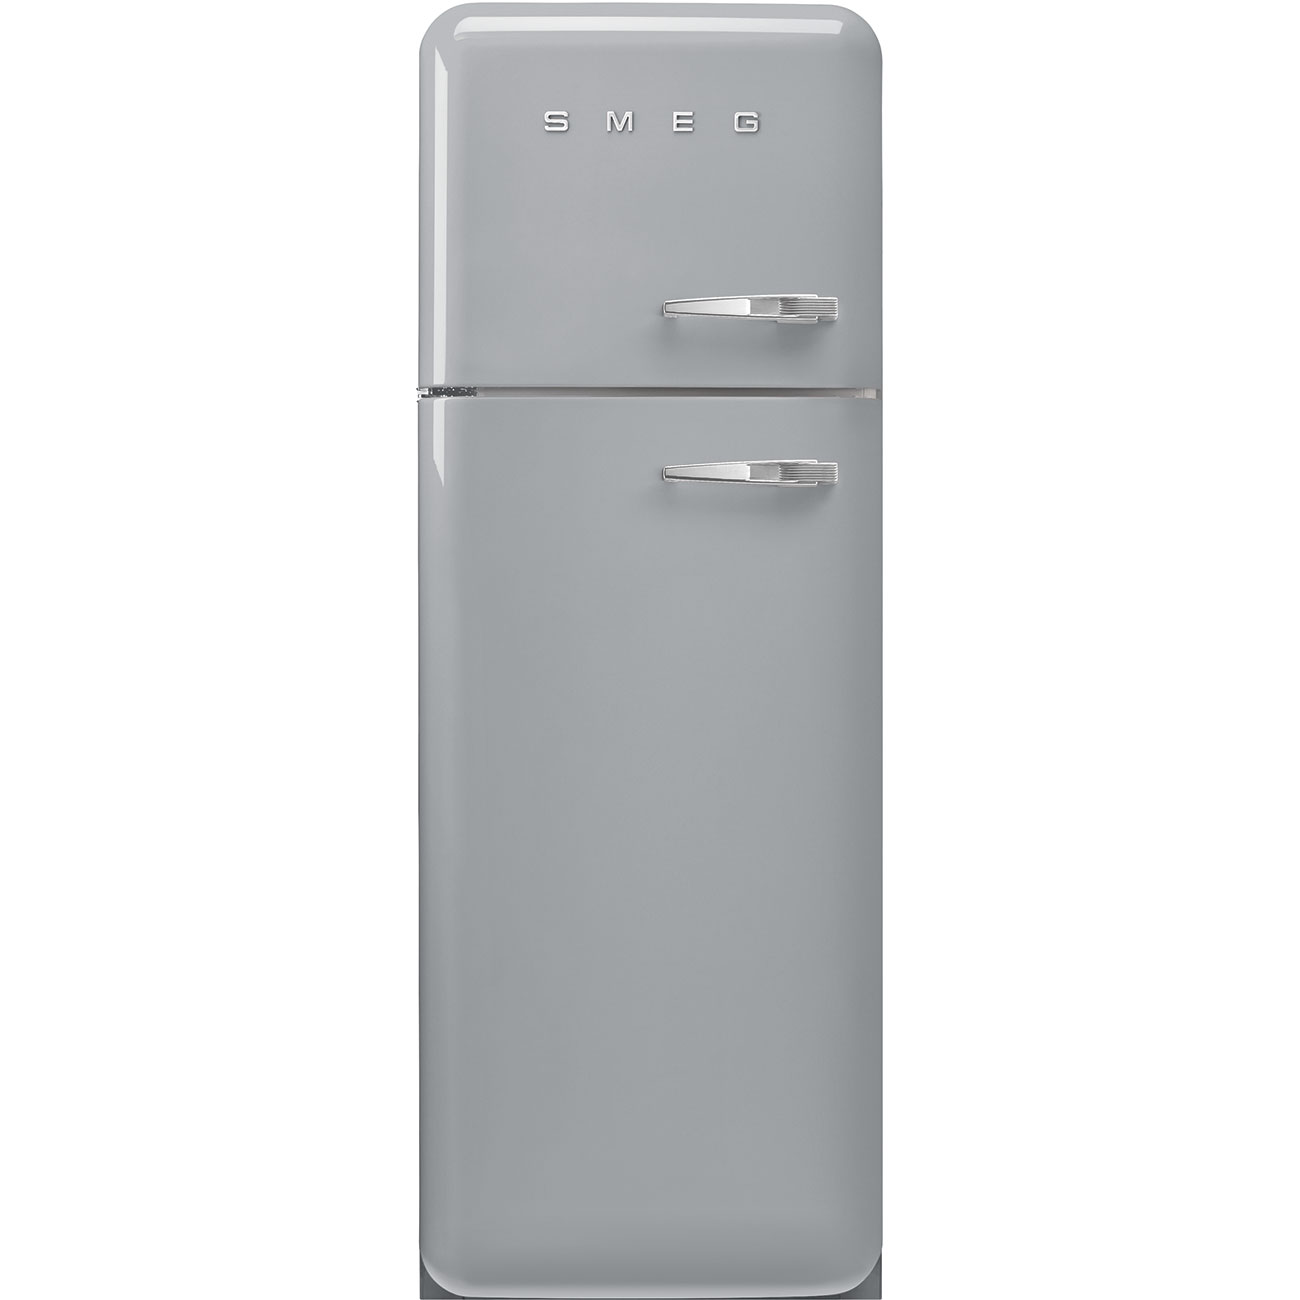 Silver refrigerator - Smeg_1